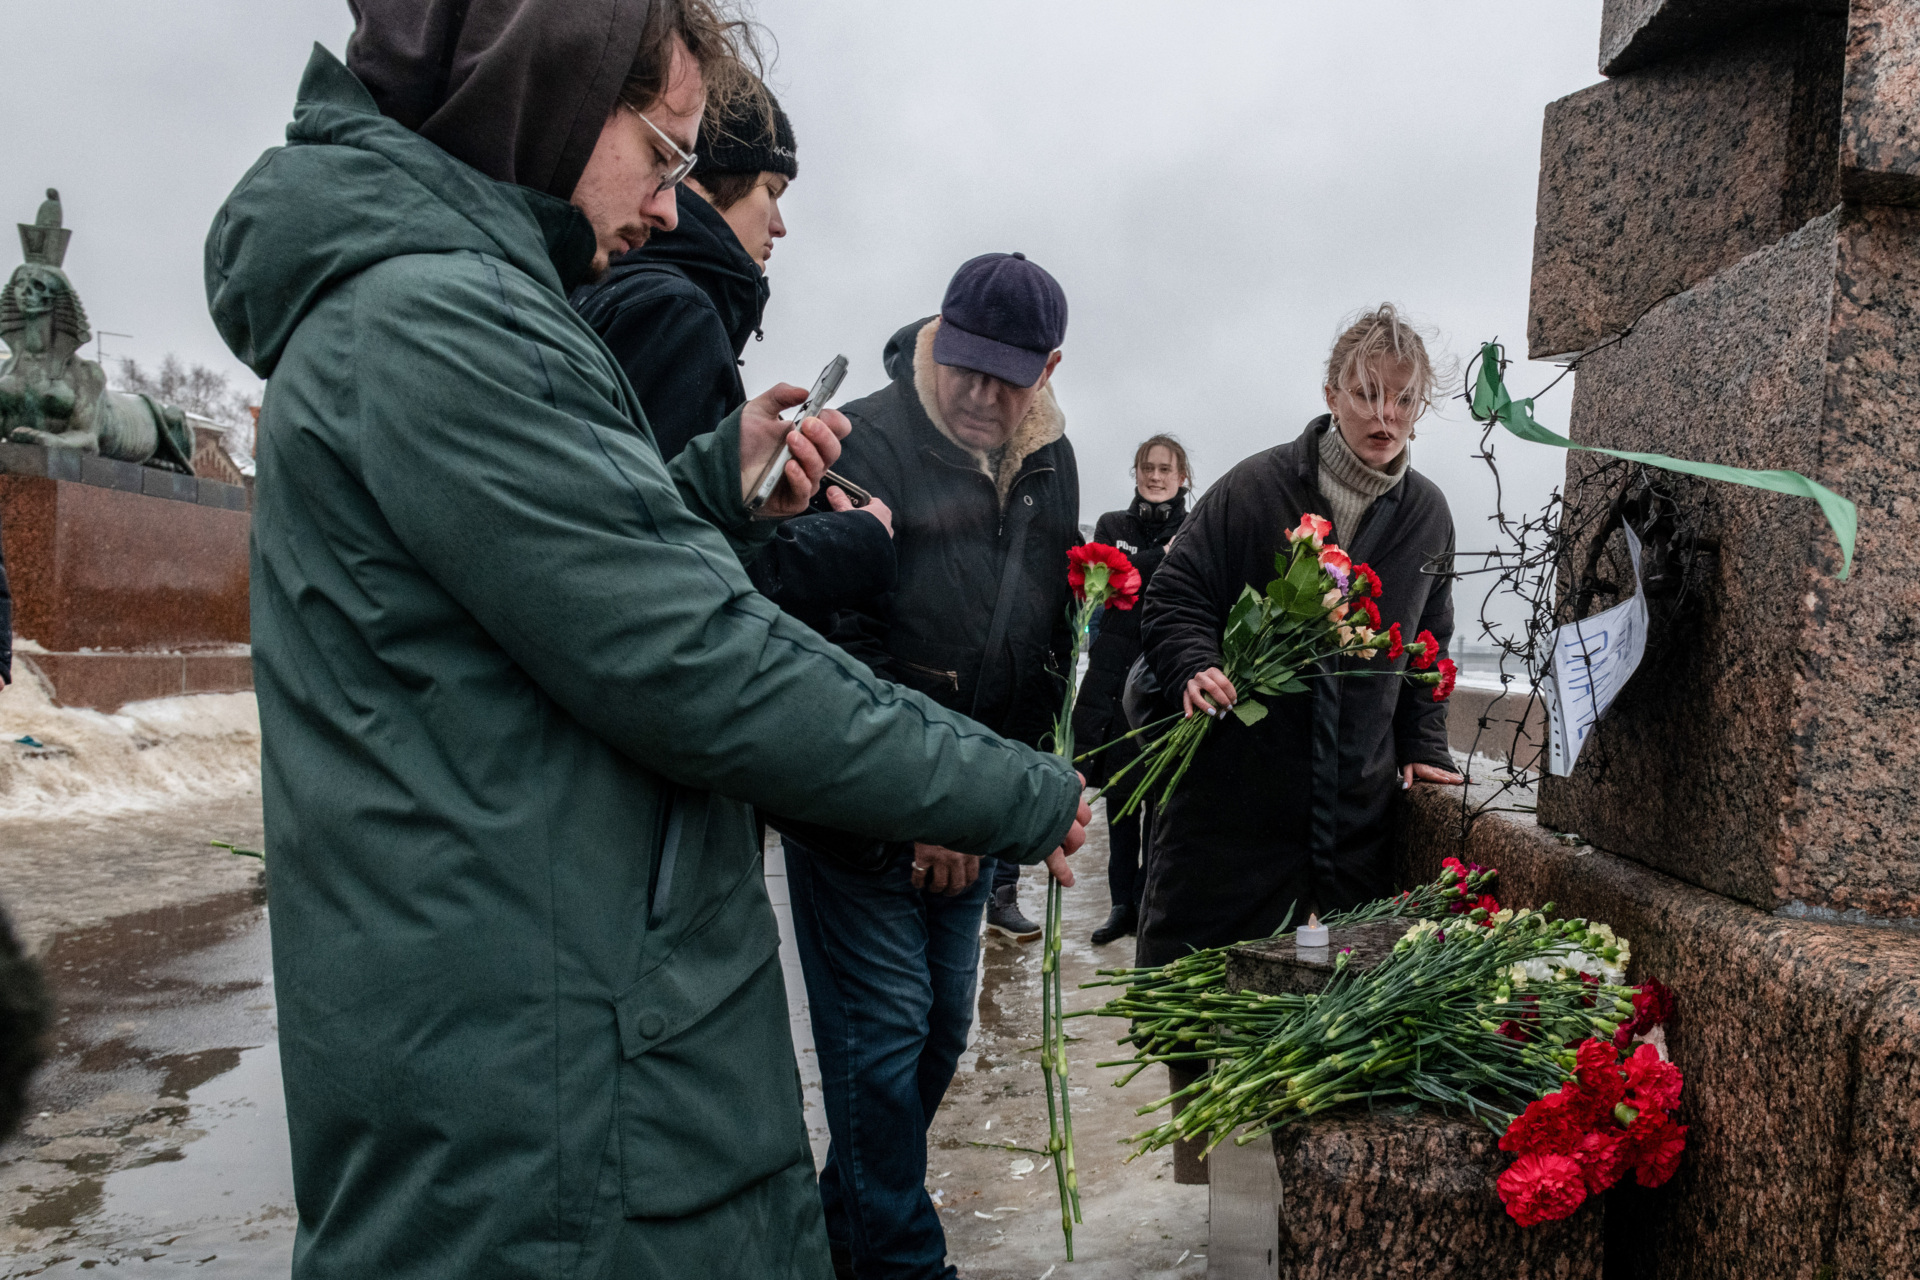 ΑΓΙΑ ΠΕΤΡΟΥΠΟΛΗ, ΡΩΣΙΑ - 17/02/2024: Άνθρωποι συγκεντρώνονται σε ένα μνημείο για τα θύματα της πολιτικής καταστολής για να τιμήσουν τη μνήμη του ηγέτη της ρωσικής αντιπολίτευσης Αλεξέι Ναβάλνι, μία ημέρα μετά την είδηση του θανάτου του, στην Αγία Πετρούπολη. (Photo by Andrei Bok/SOPA Images/LightRocket via Getty Images)